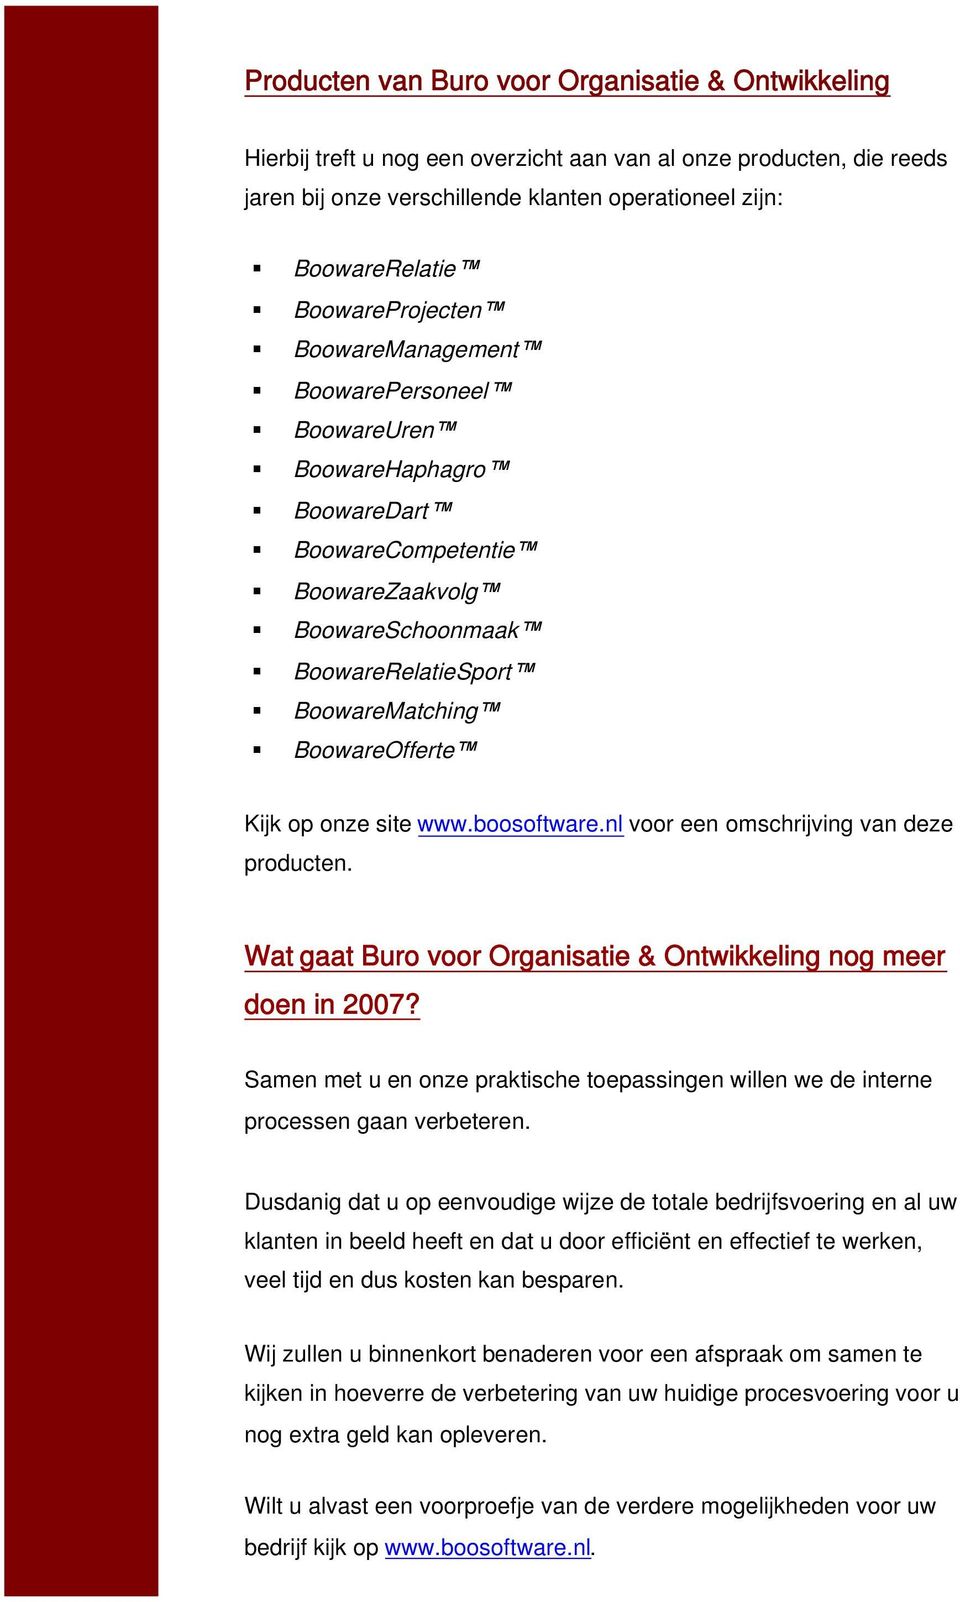 Kijk op onze site www.boosoftware.nl voor een omschrijving van deze producten. Wat gaat Buro voor Organisatie & Ontwikkeling nog meer doen in 2007?